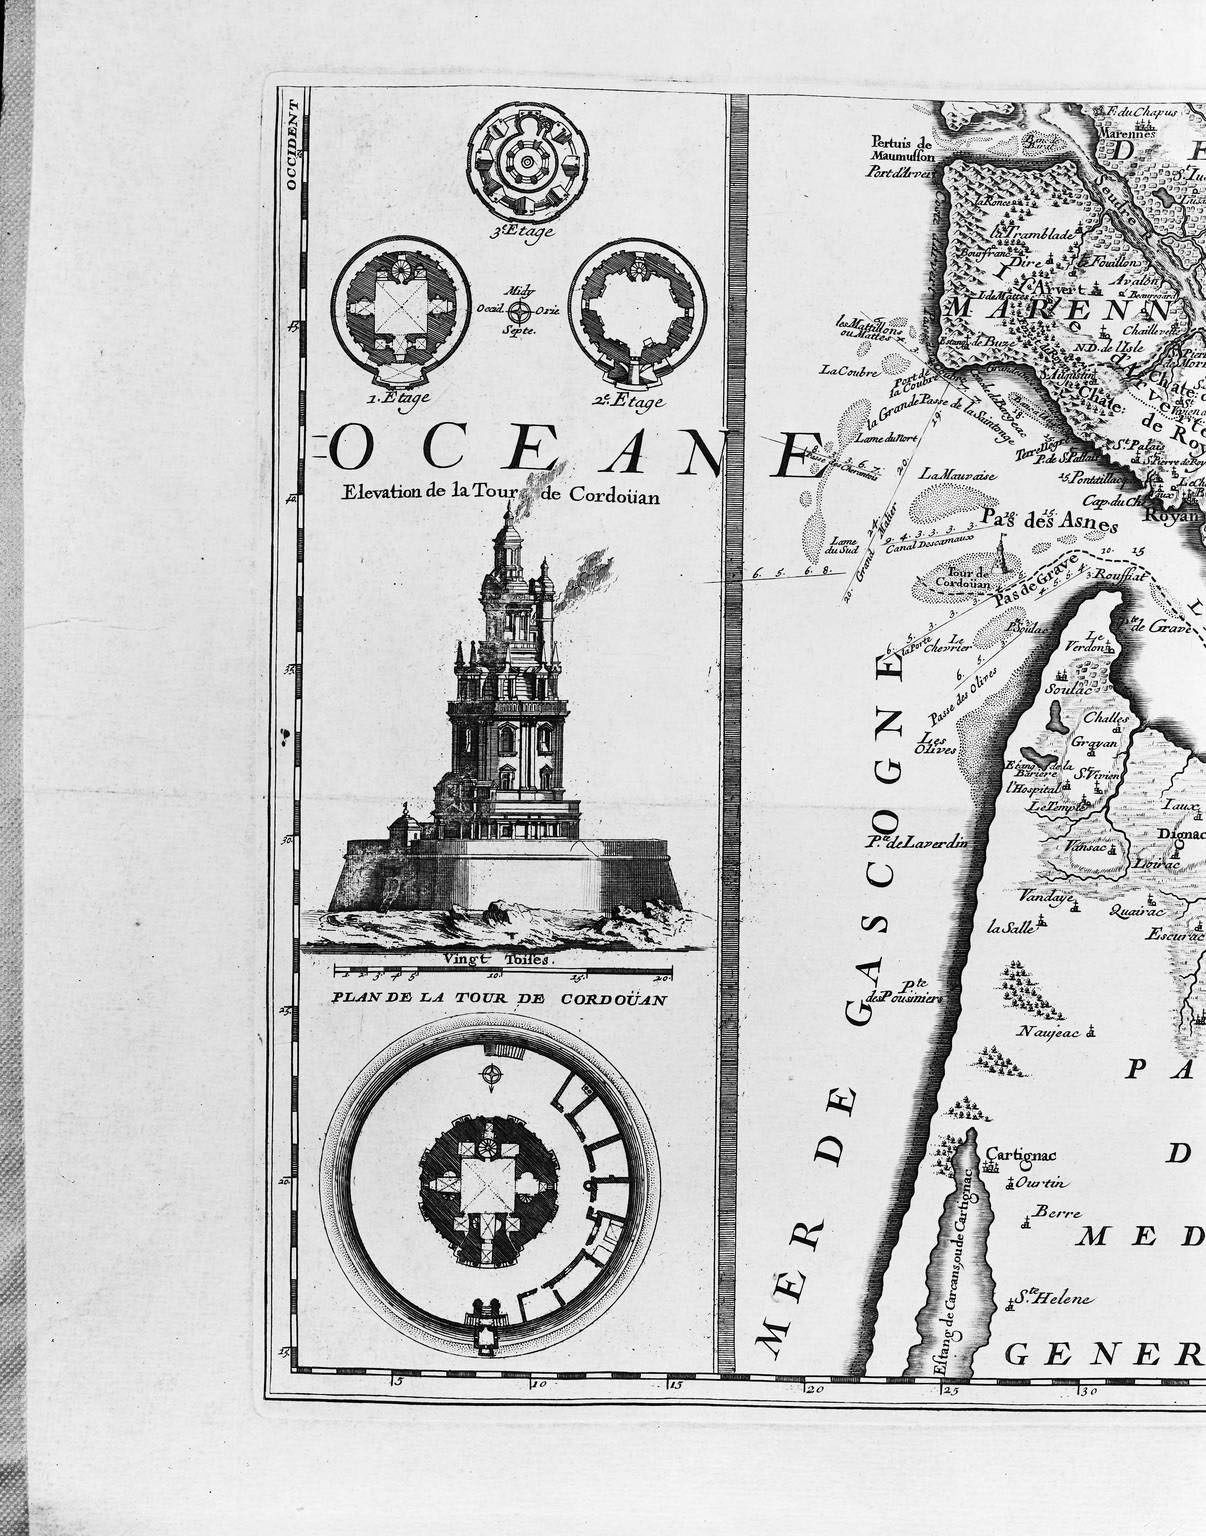 Plan et élévation de la Tour de Cordouan, détail de la carte de 